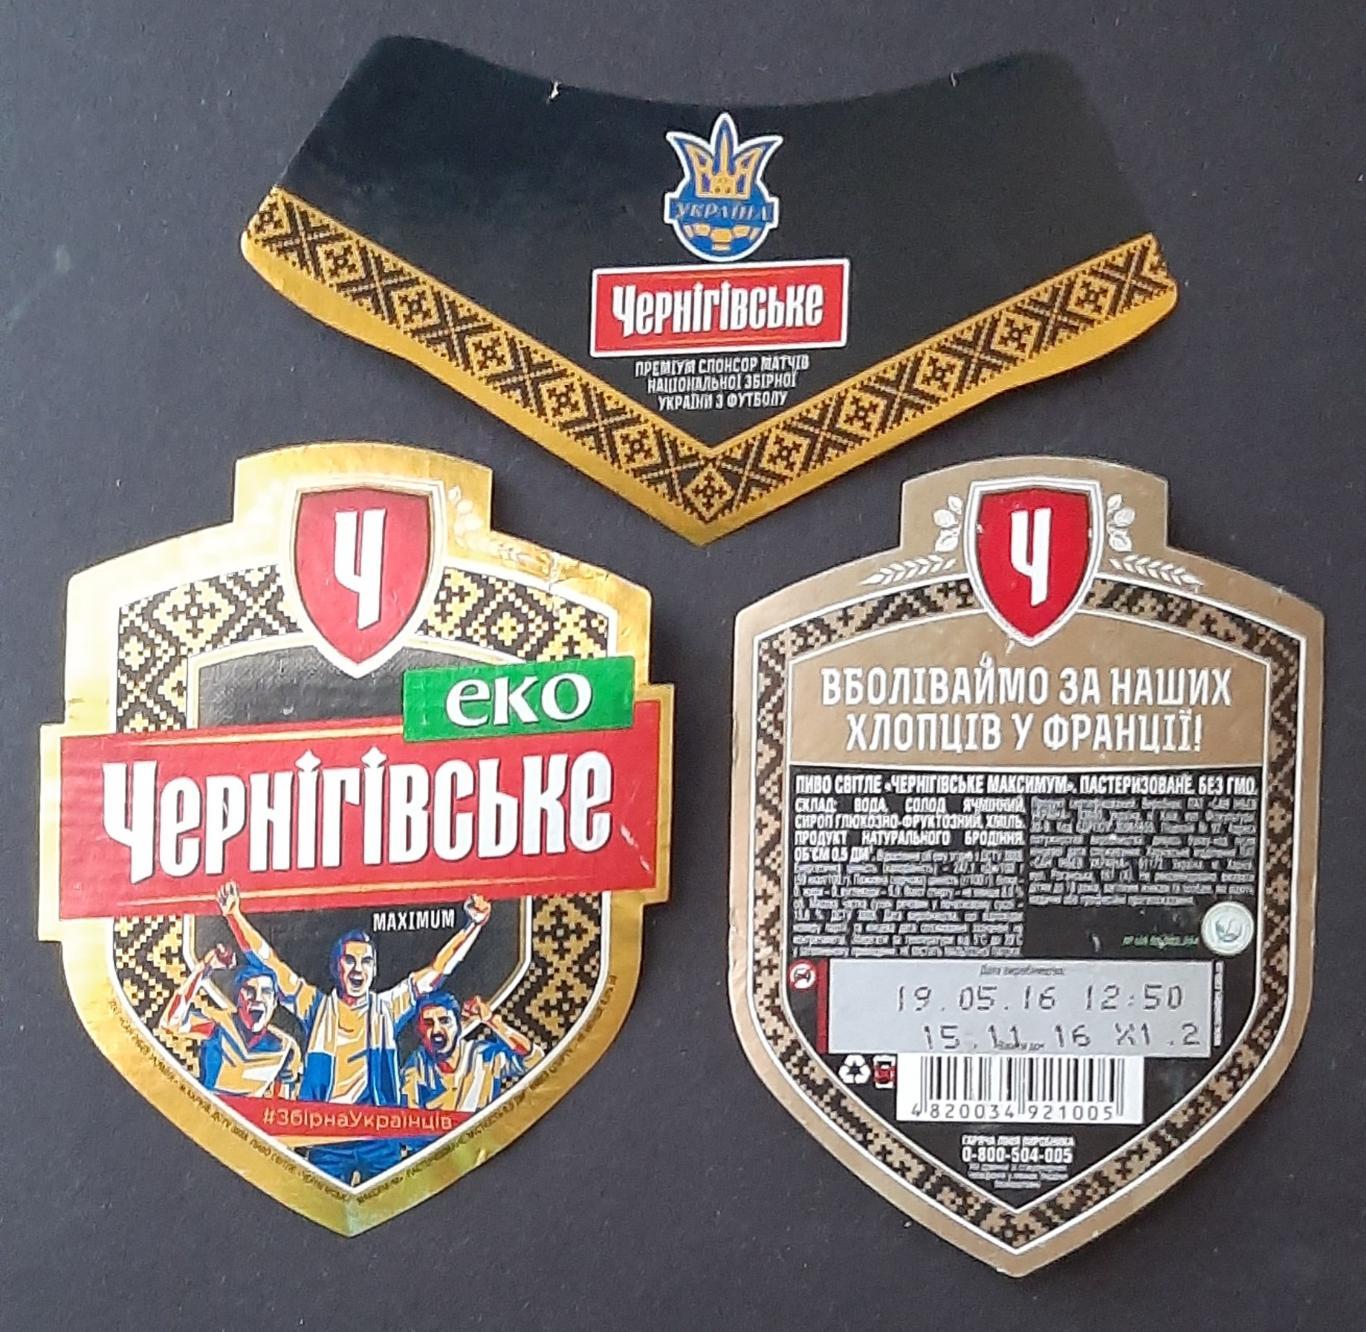 Етикетка пивна Чернігівське максимум Преміум спонсор матчів зб.України з футболу